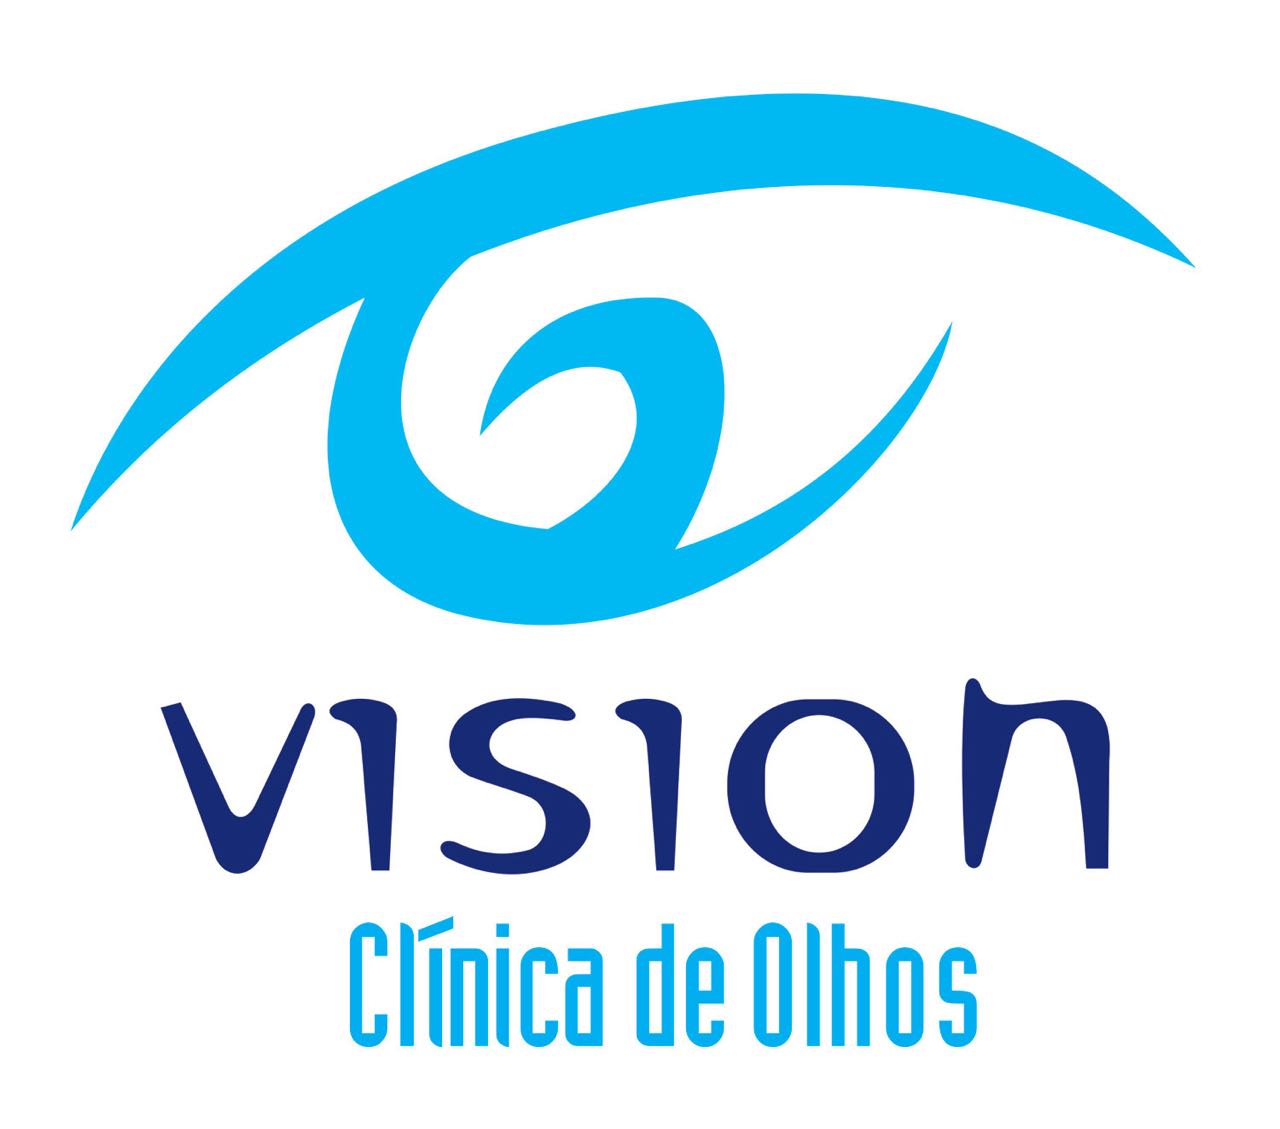 VISION CLNICA DE OLHOS